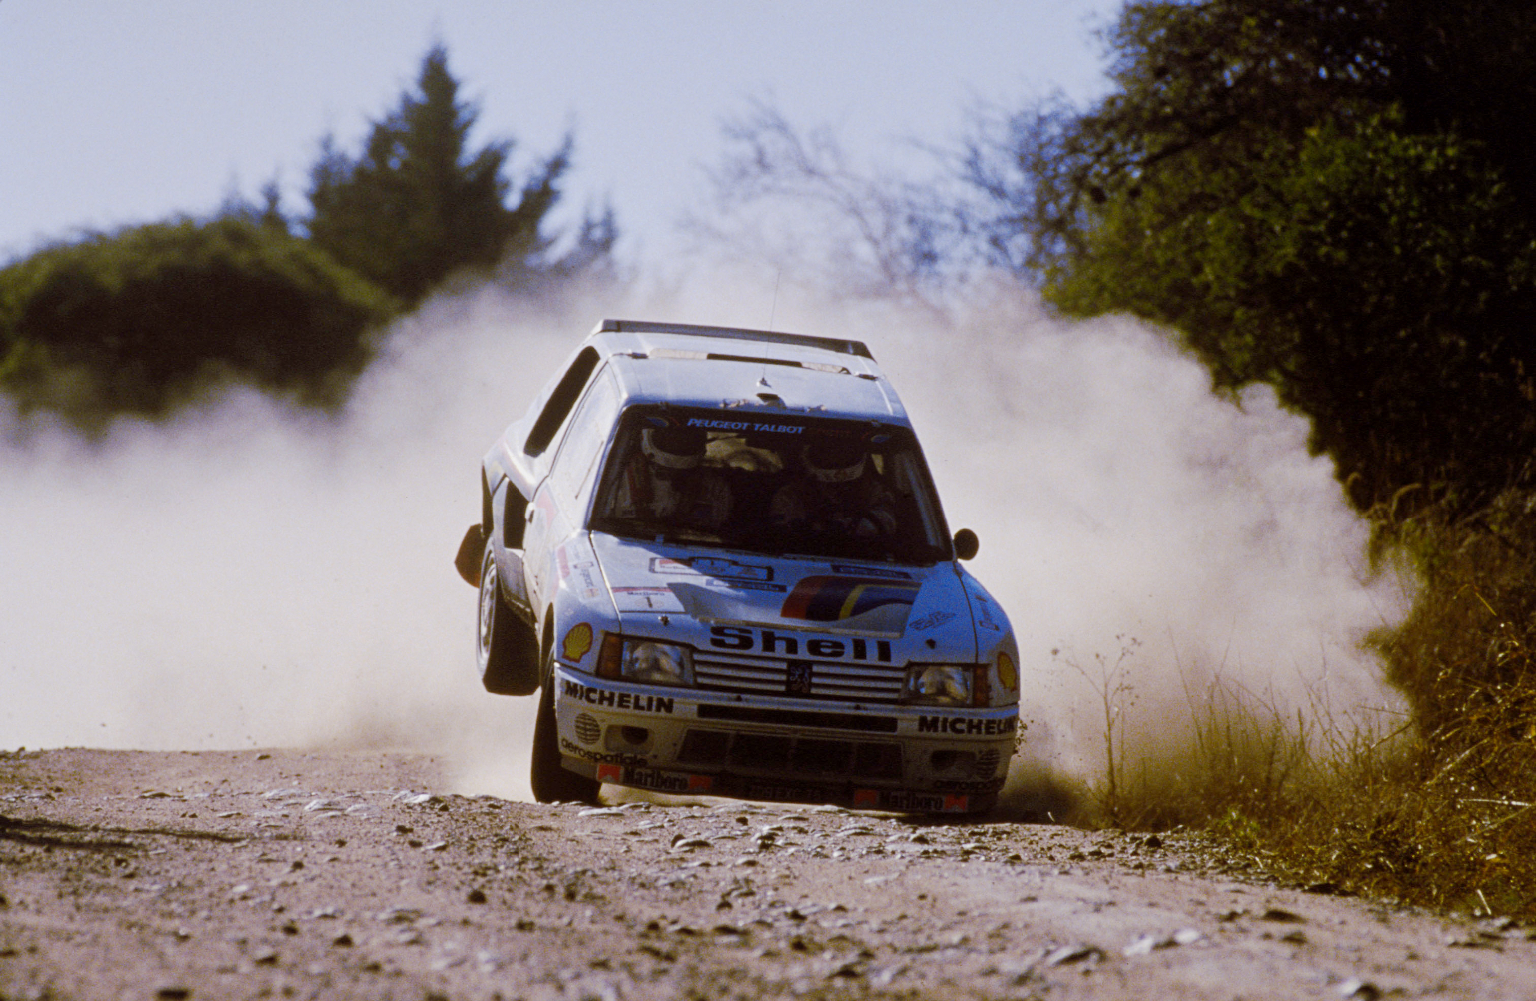 044 - WRC 1985. Argentine. Reutemann/Fauchille. Peugeot 205 Turbo 16. 3me